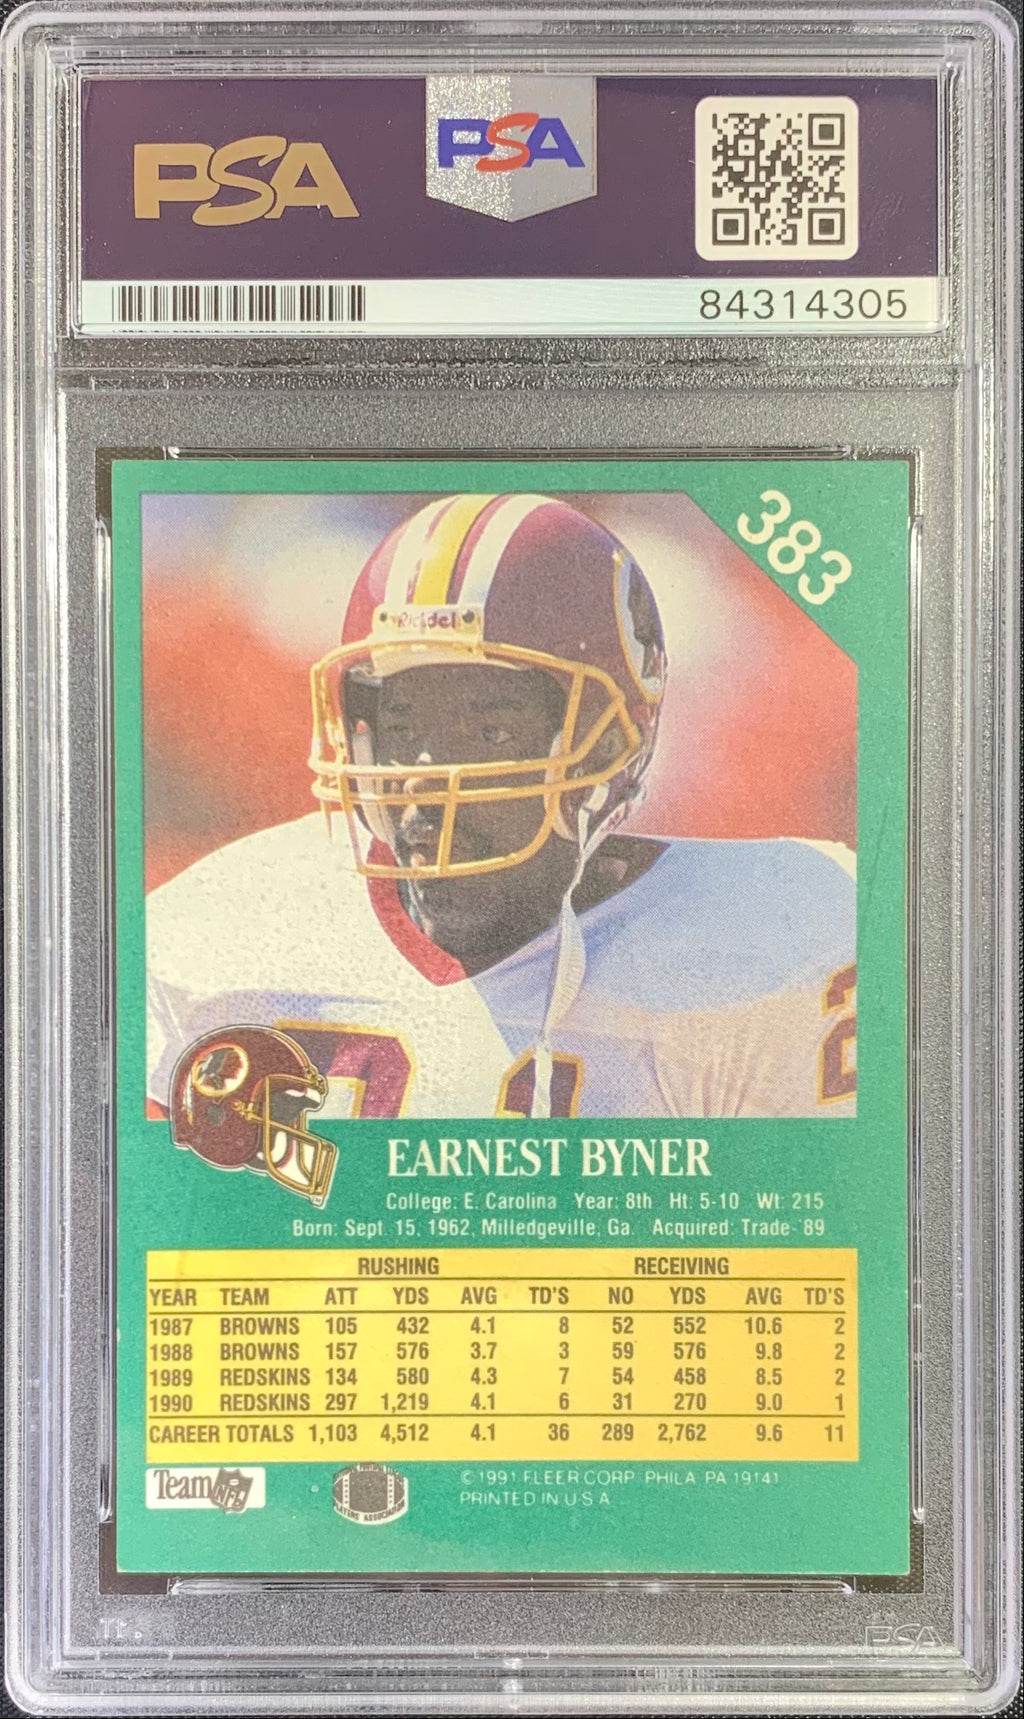 Earnest Byner autographed signed 1991 Fleer card #383 Redskins PSA Encapsulated